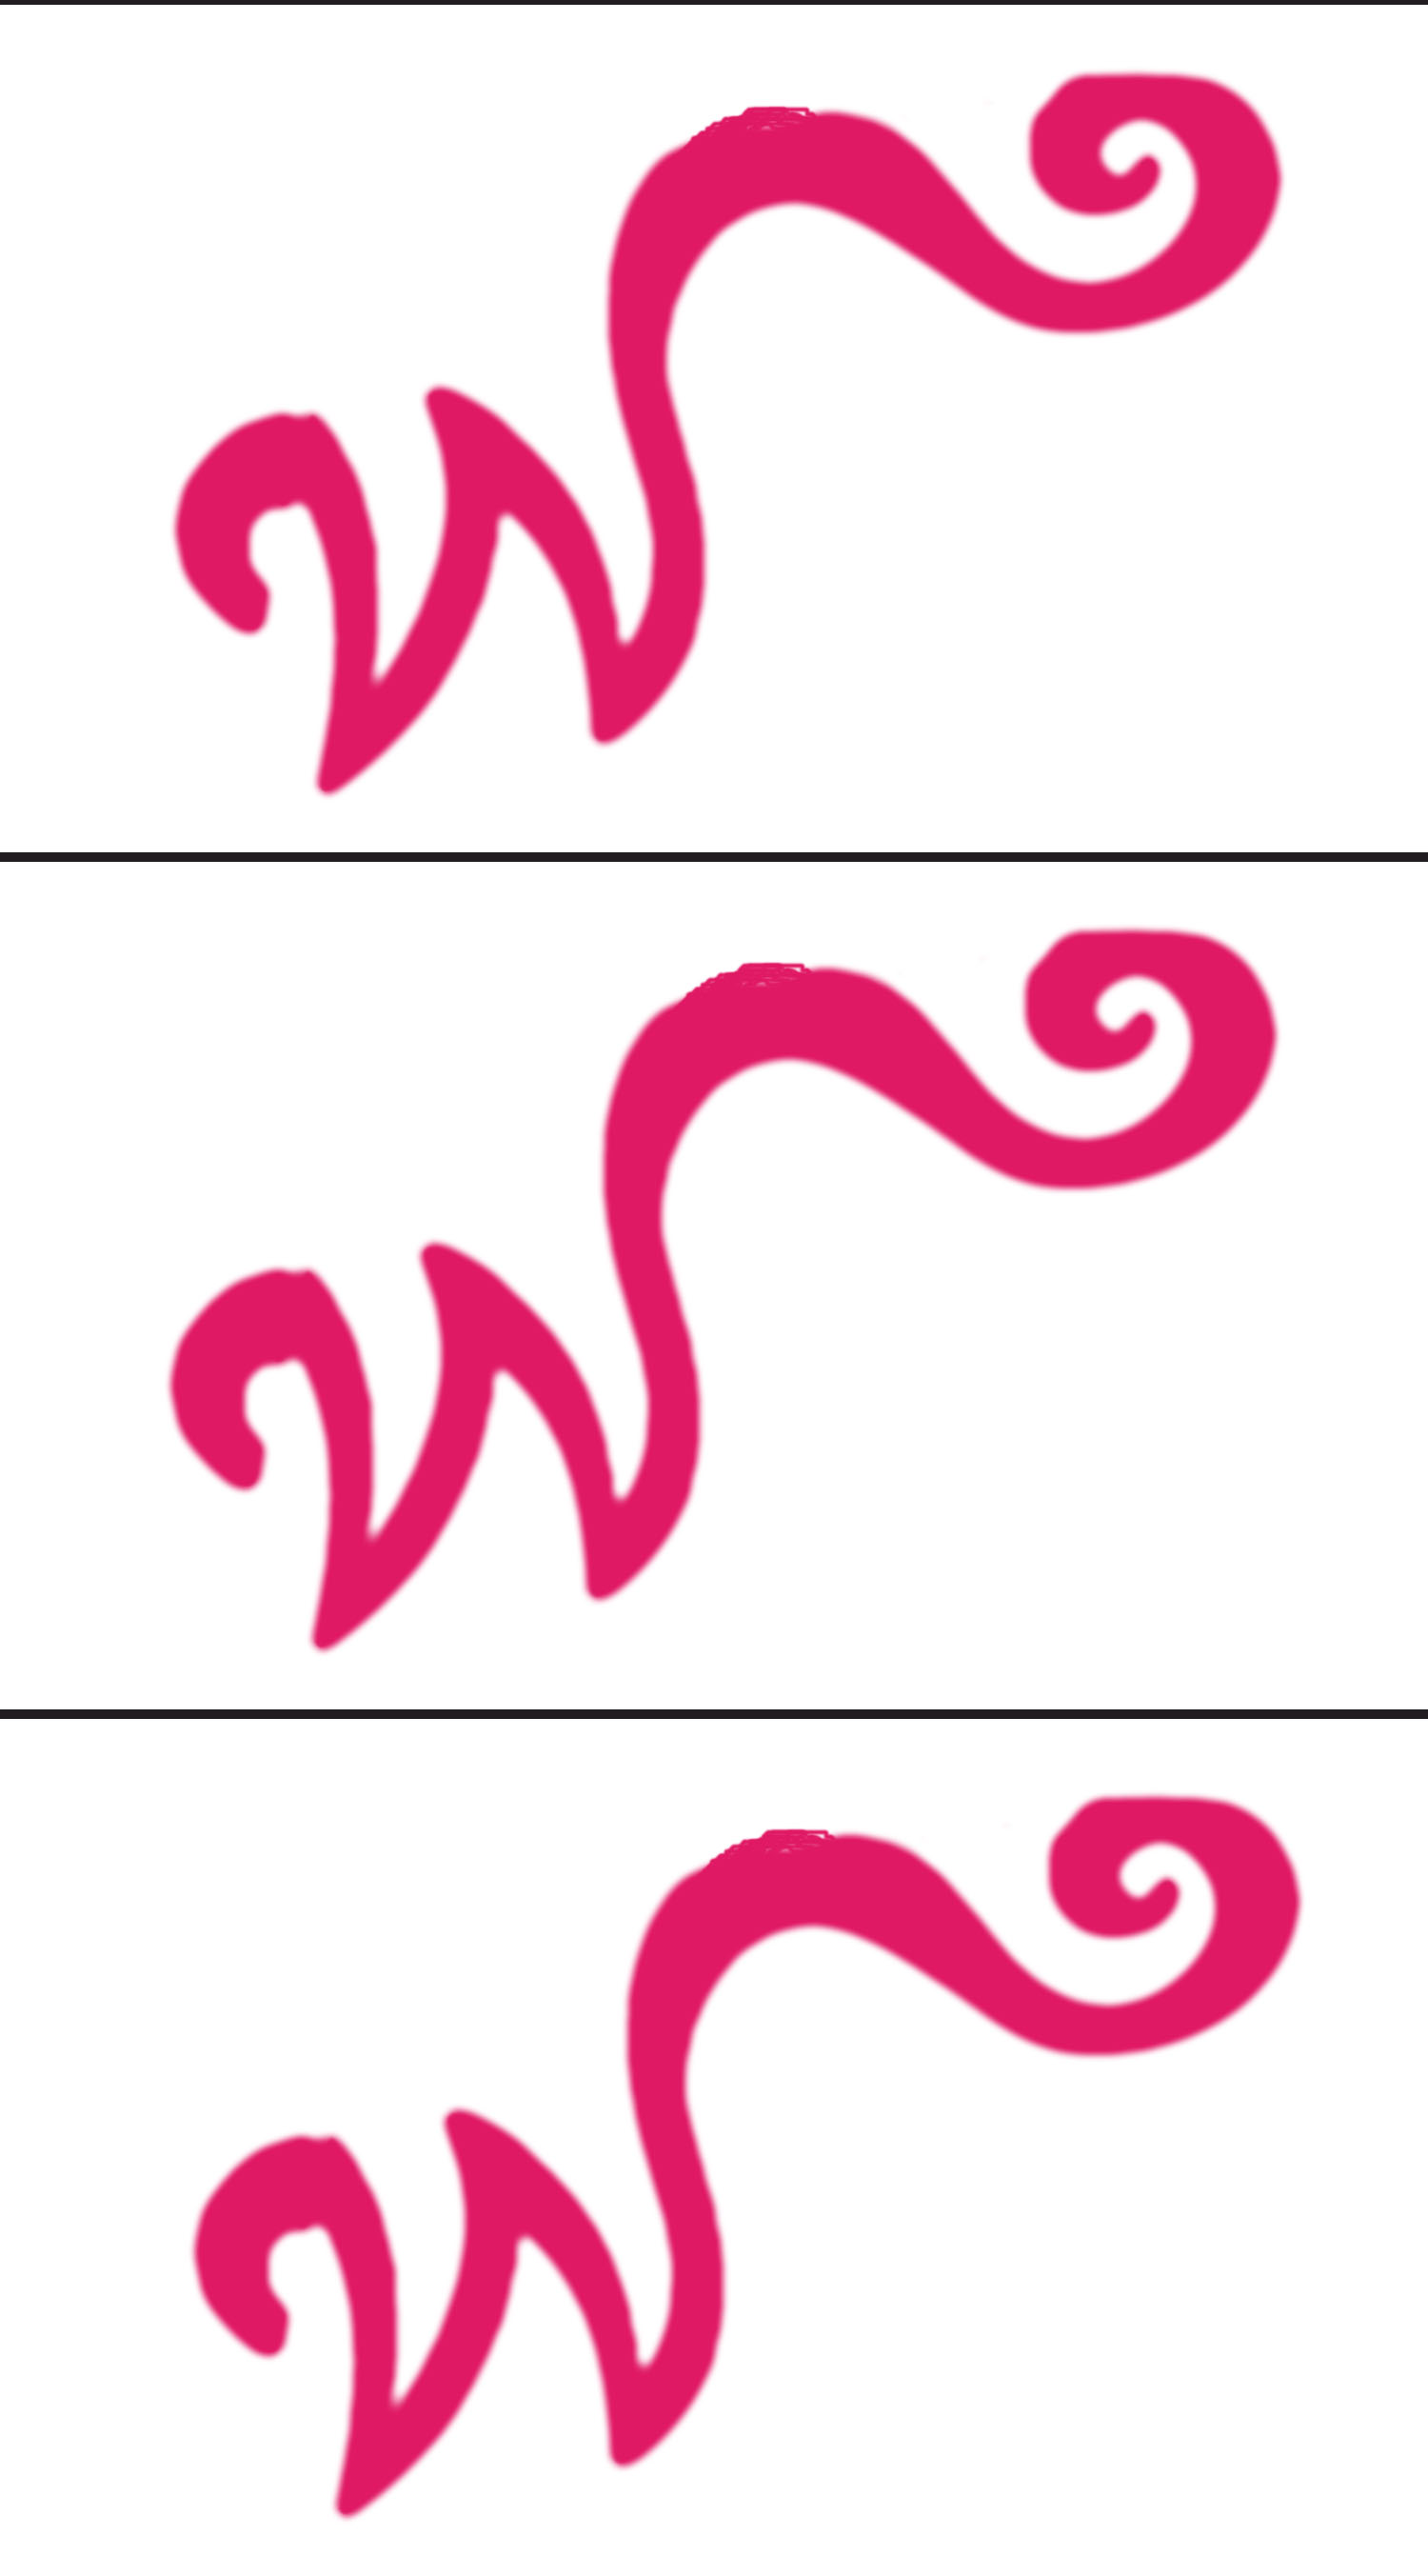 wonka w logo